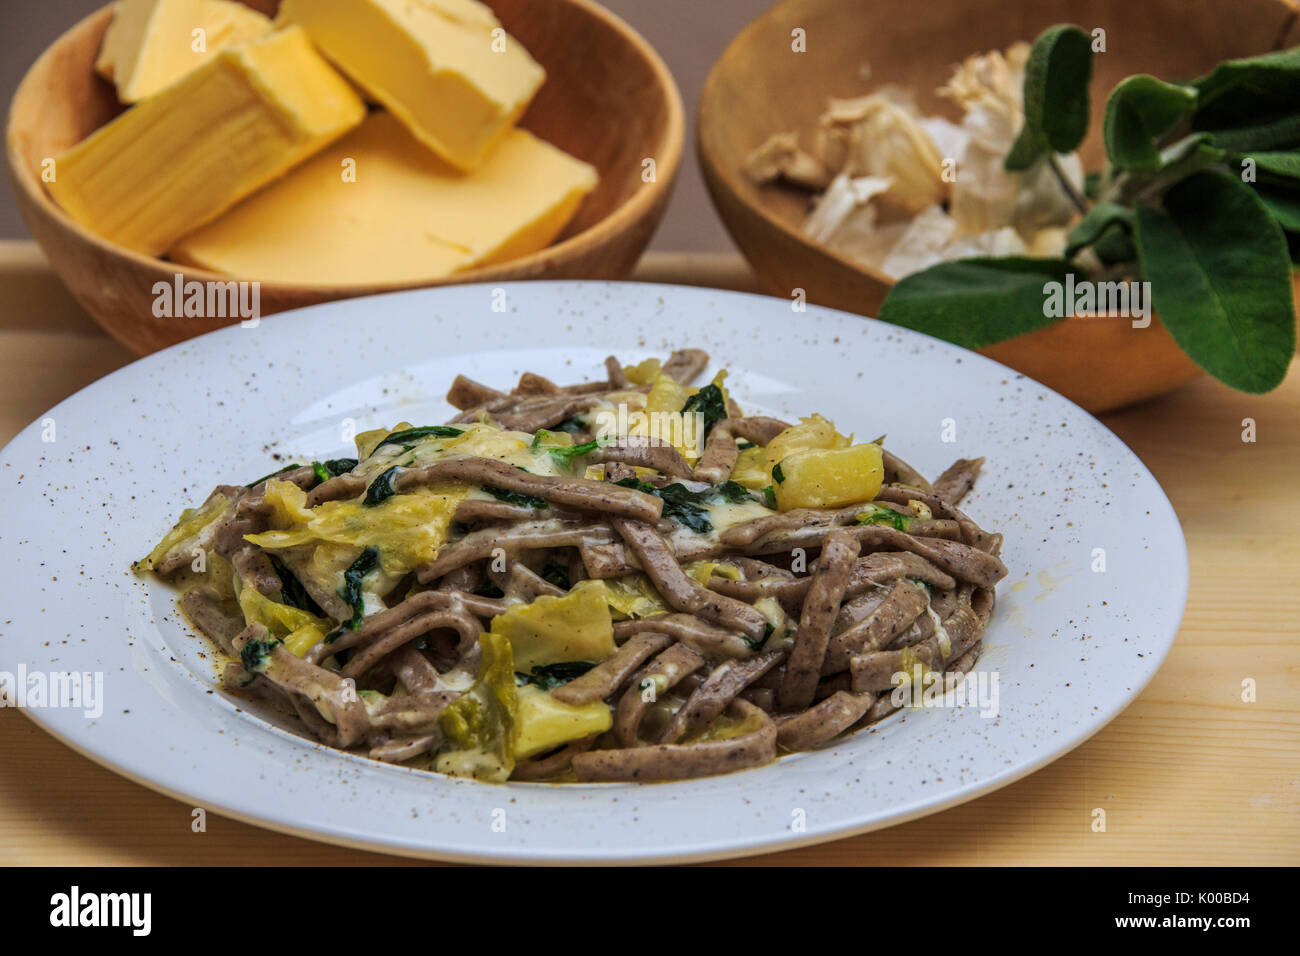 Plat de Pizzoccheri Valtellina typique de plat principal. La Lombardie. L'Italie. L'Europe Banque D'Images